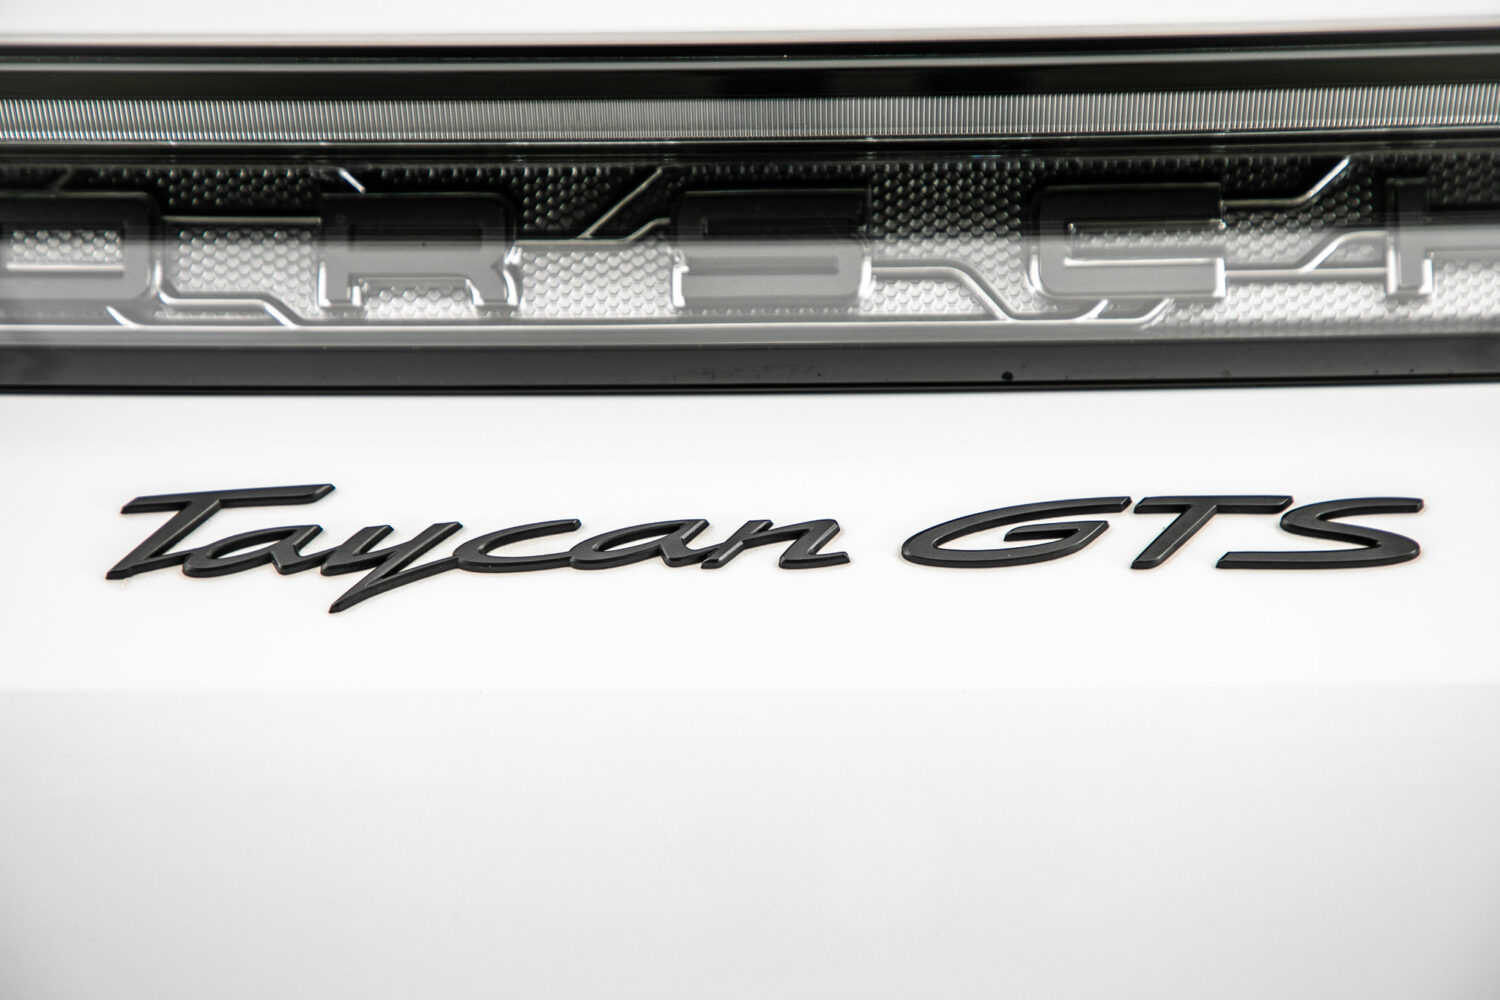 タイカン GTS 4シート 4WD